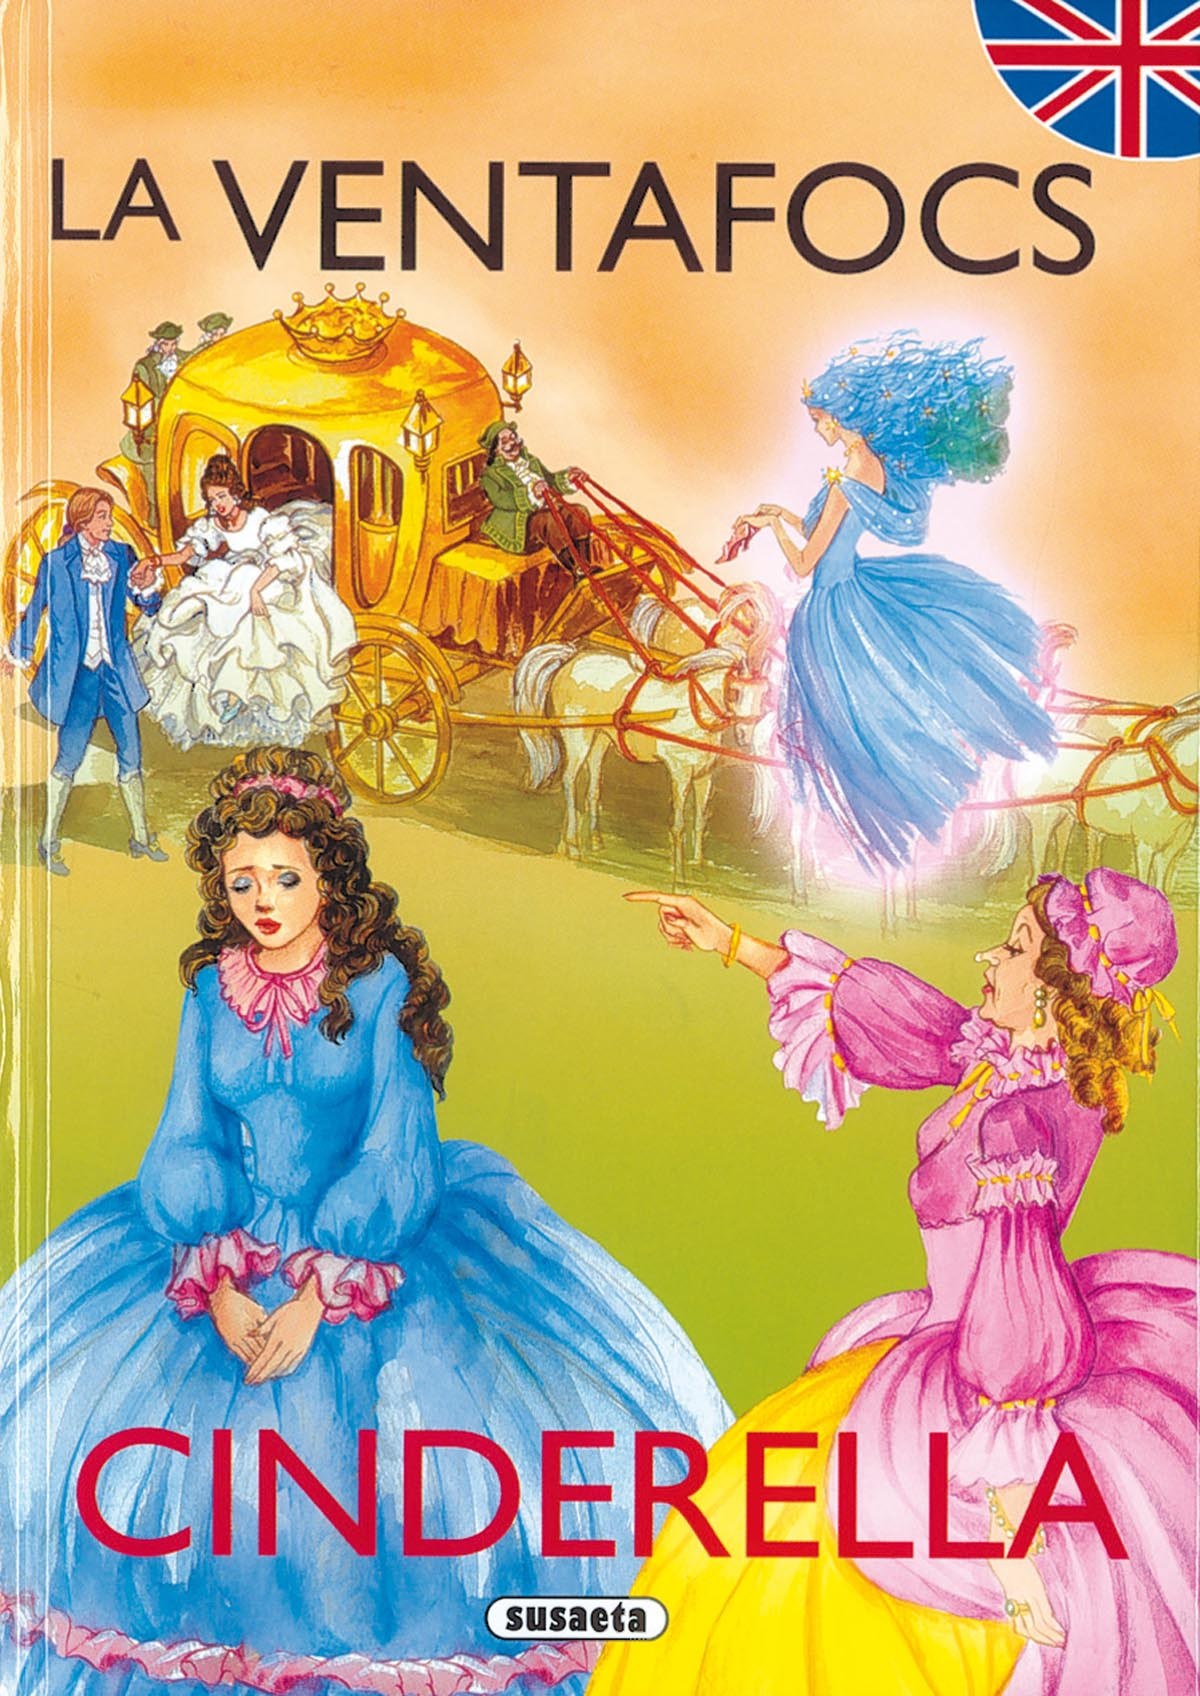 La Ventafocs/Cinderella (Contes bilingües català - anglès)